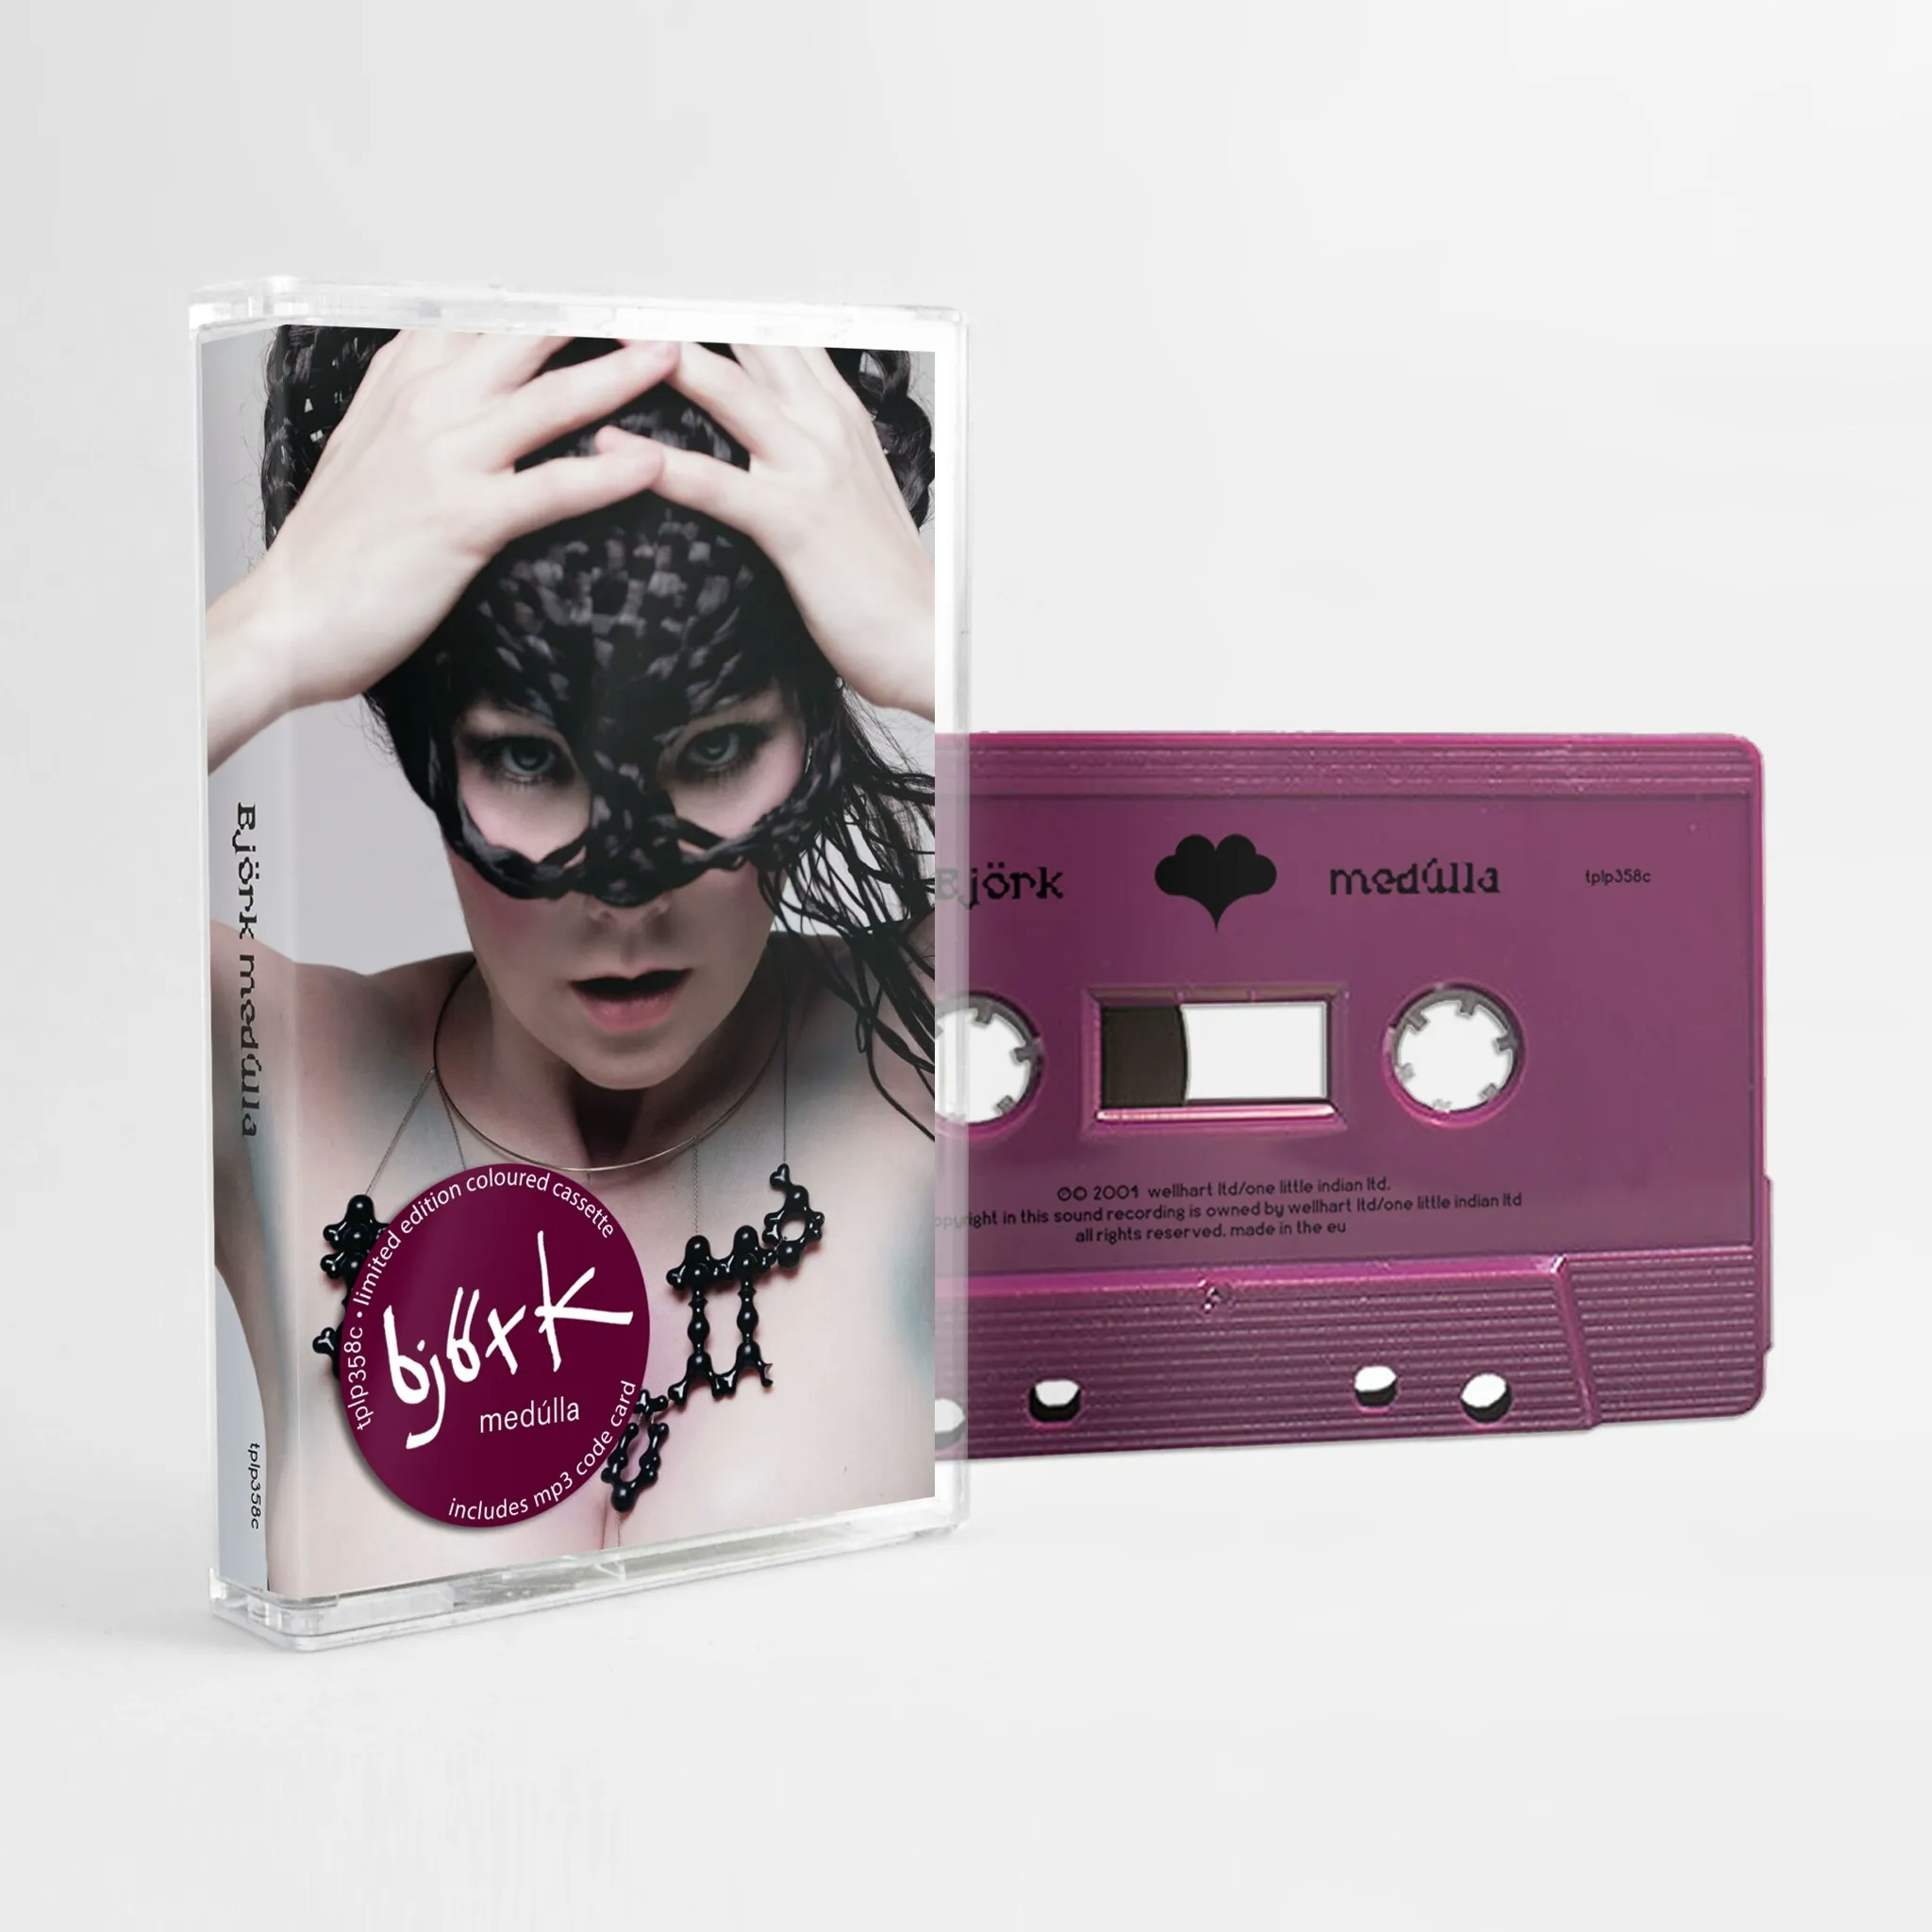 Album artwork for Medulla by Björk